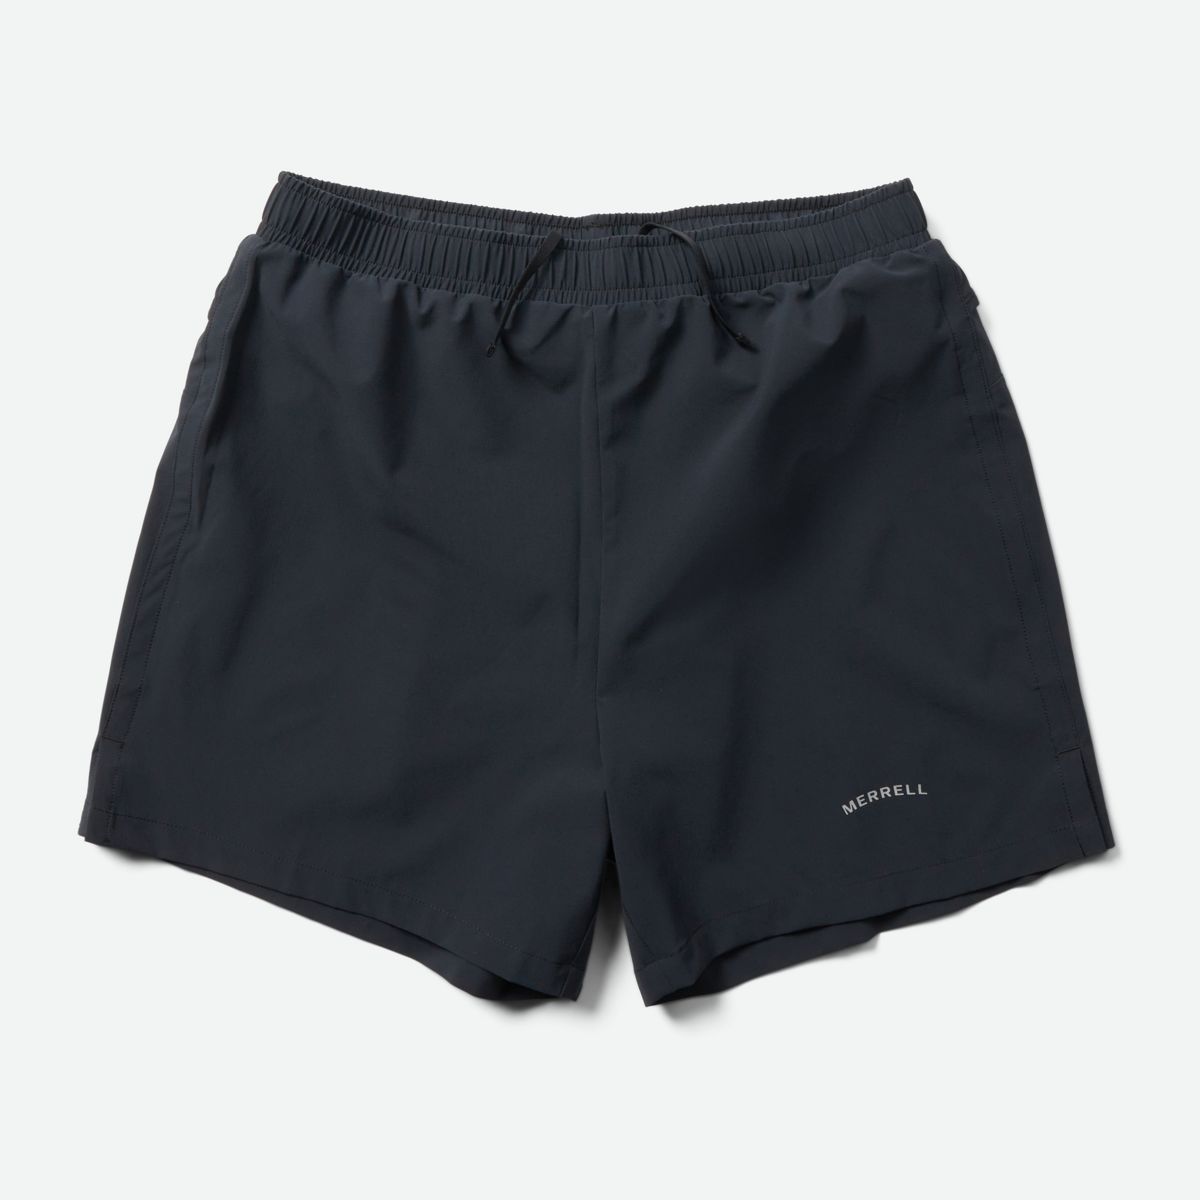 Pantalones cortos de running hombre ¡compra ahora!